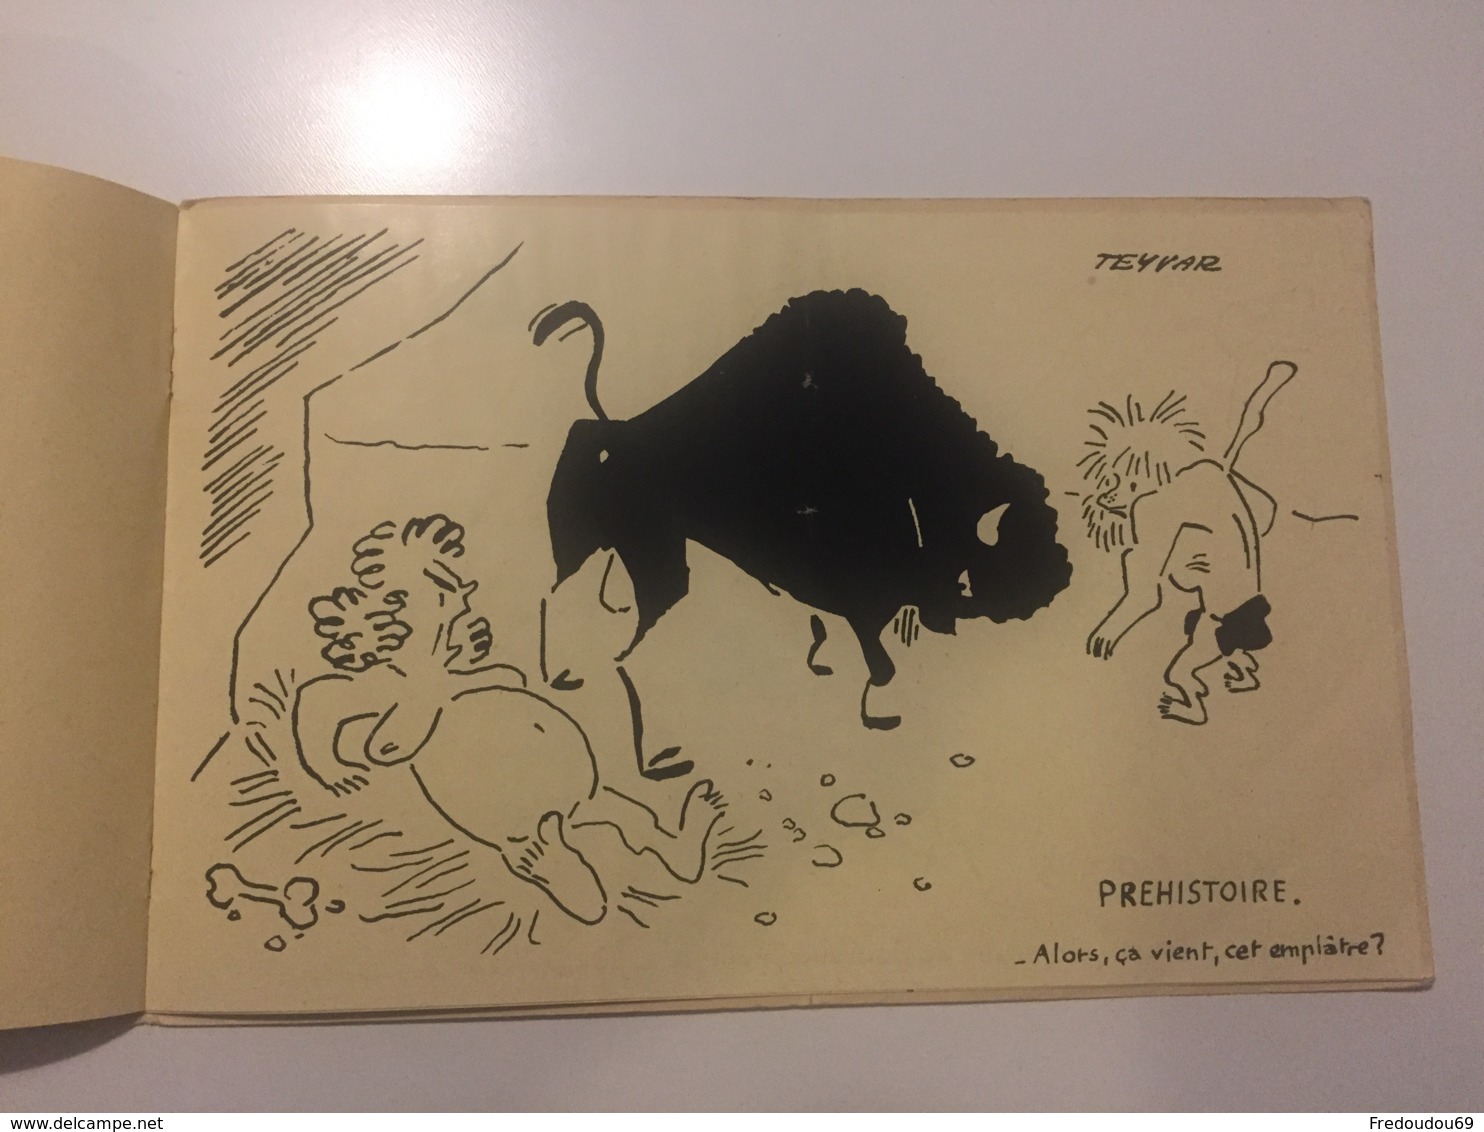 Invitation au bal de la pharmacie - 1953 - Paris - Dessinateur TEYVAR